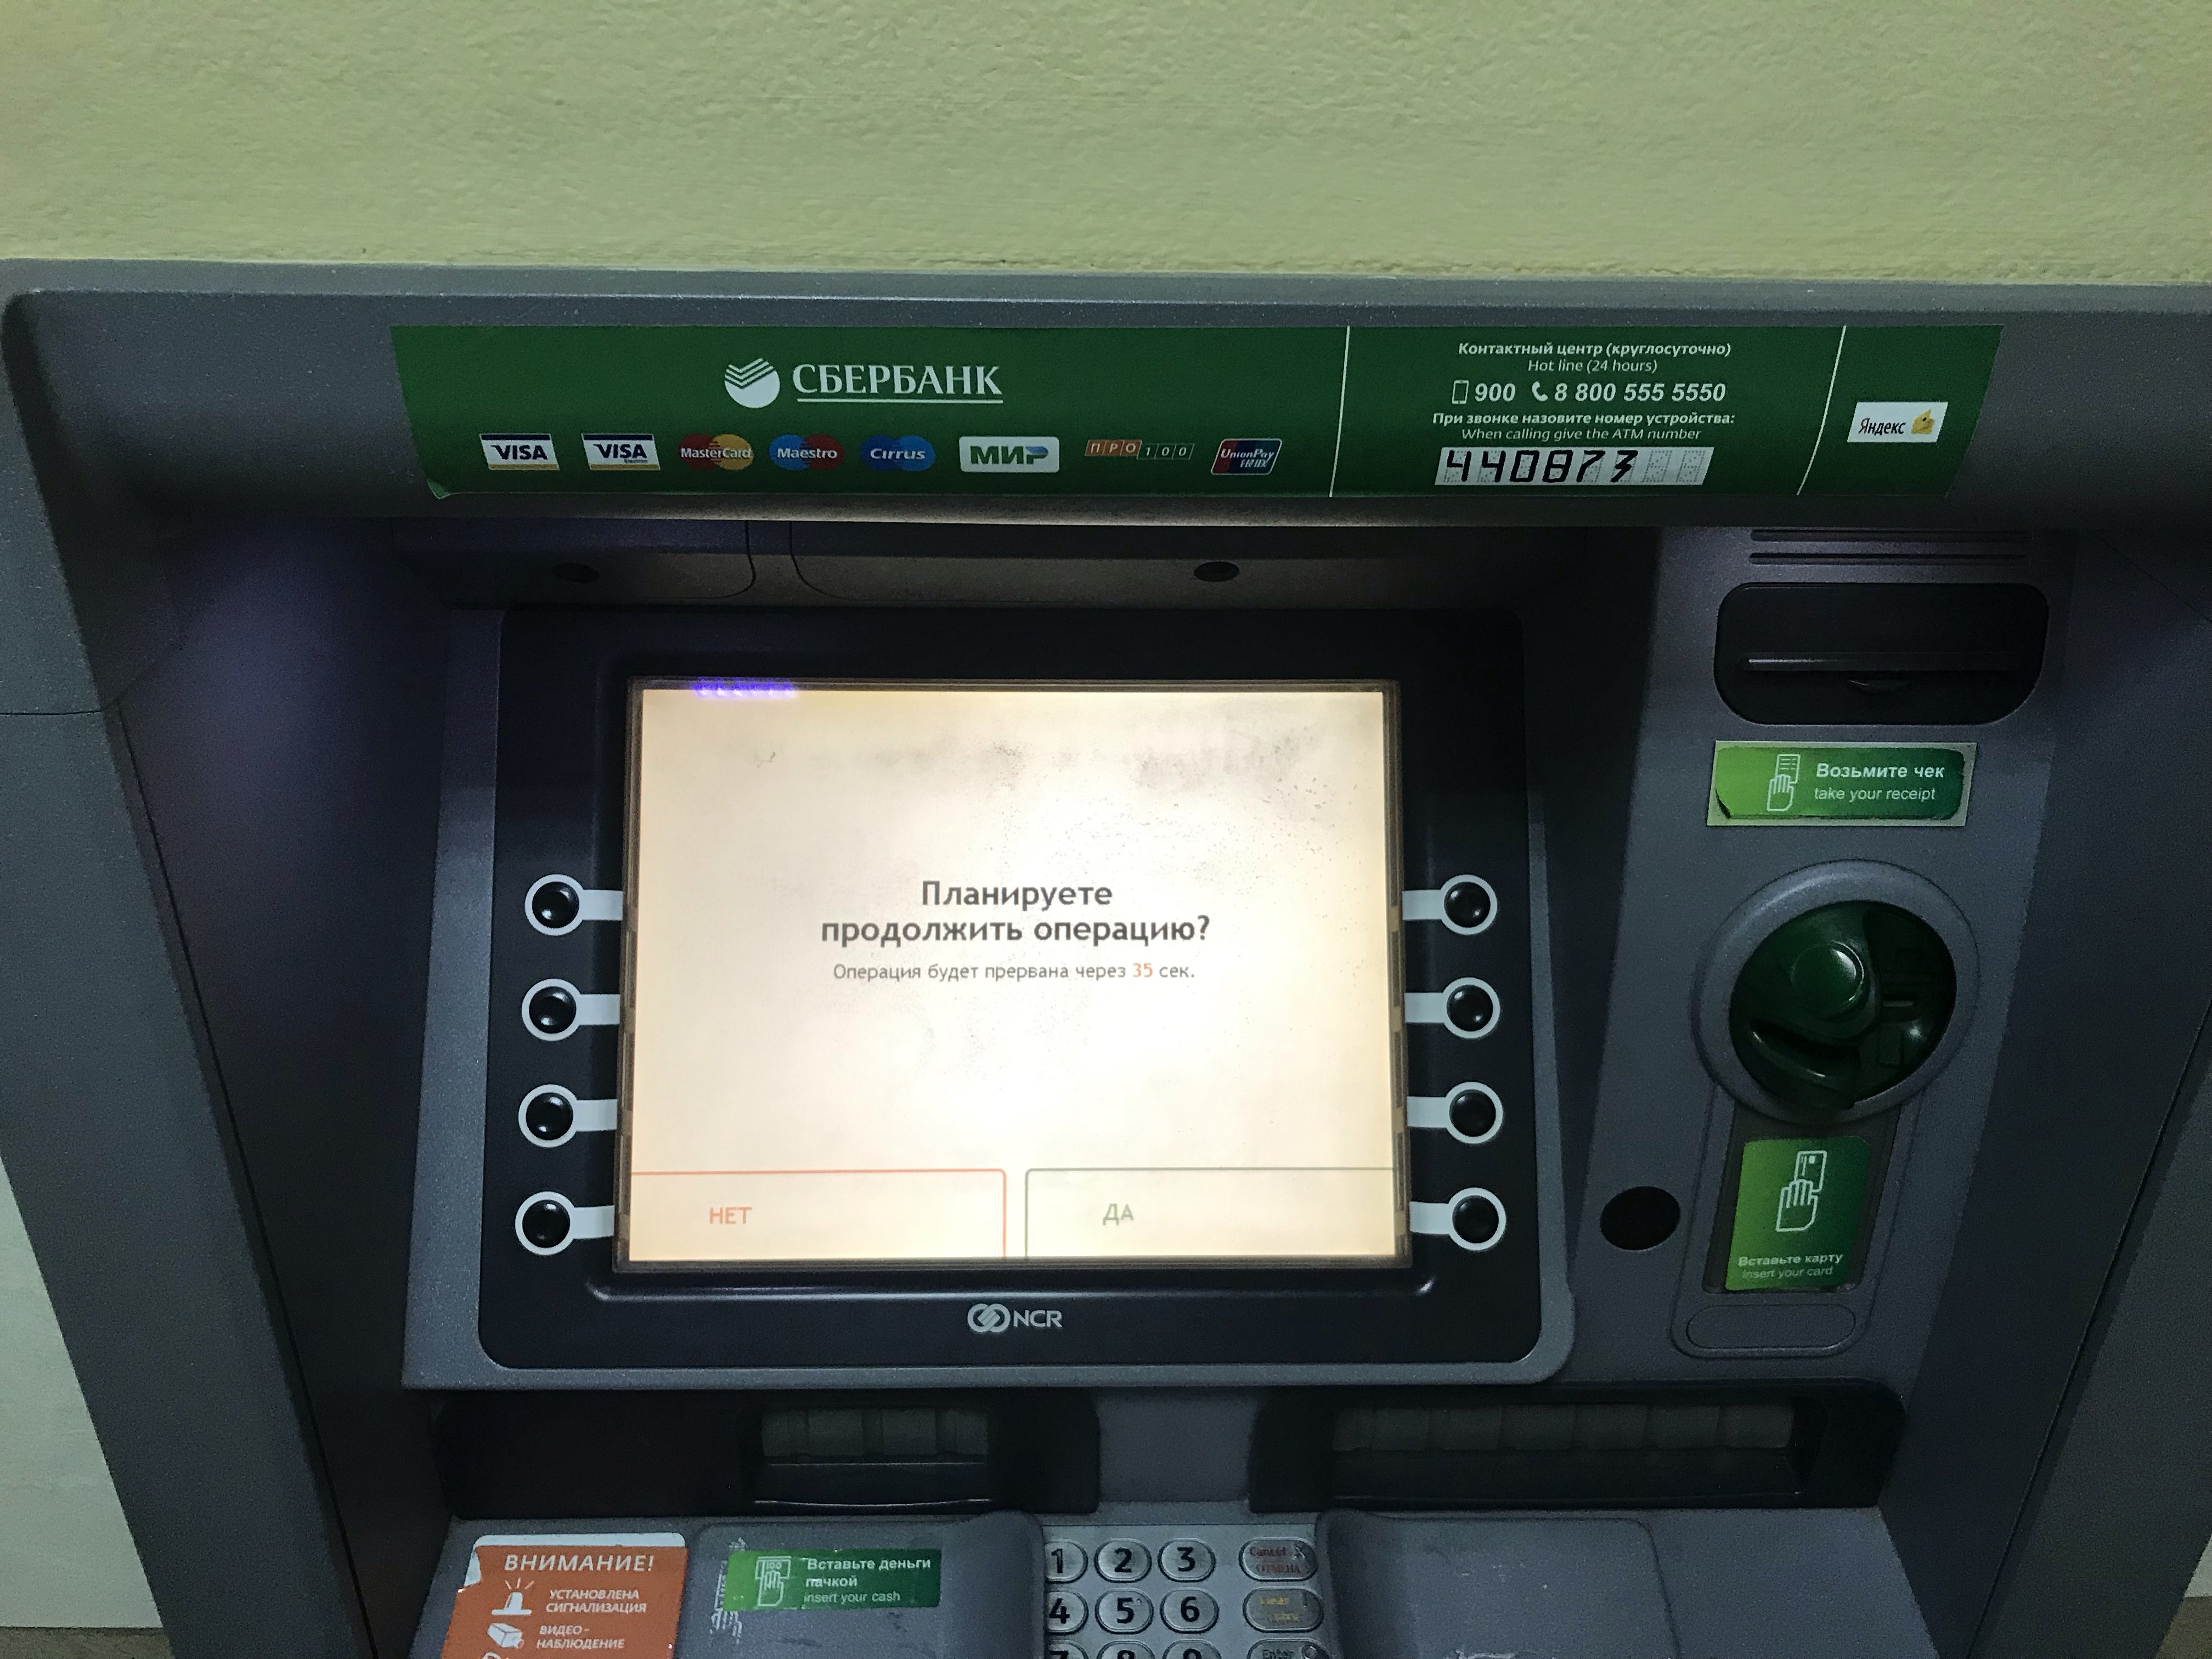 Номер телефона терминала сбербанка. Банкомат Сбербанк на Станиславского. Увозят банкомата Сбербанка. Банкомат не работает. Банкомат Unionpay.